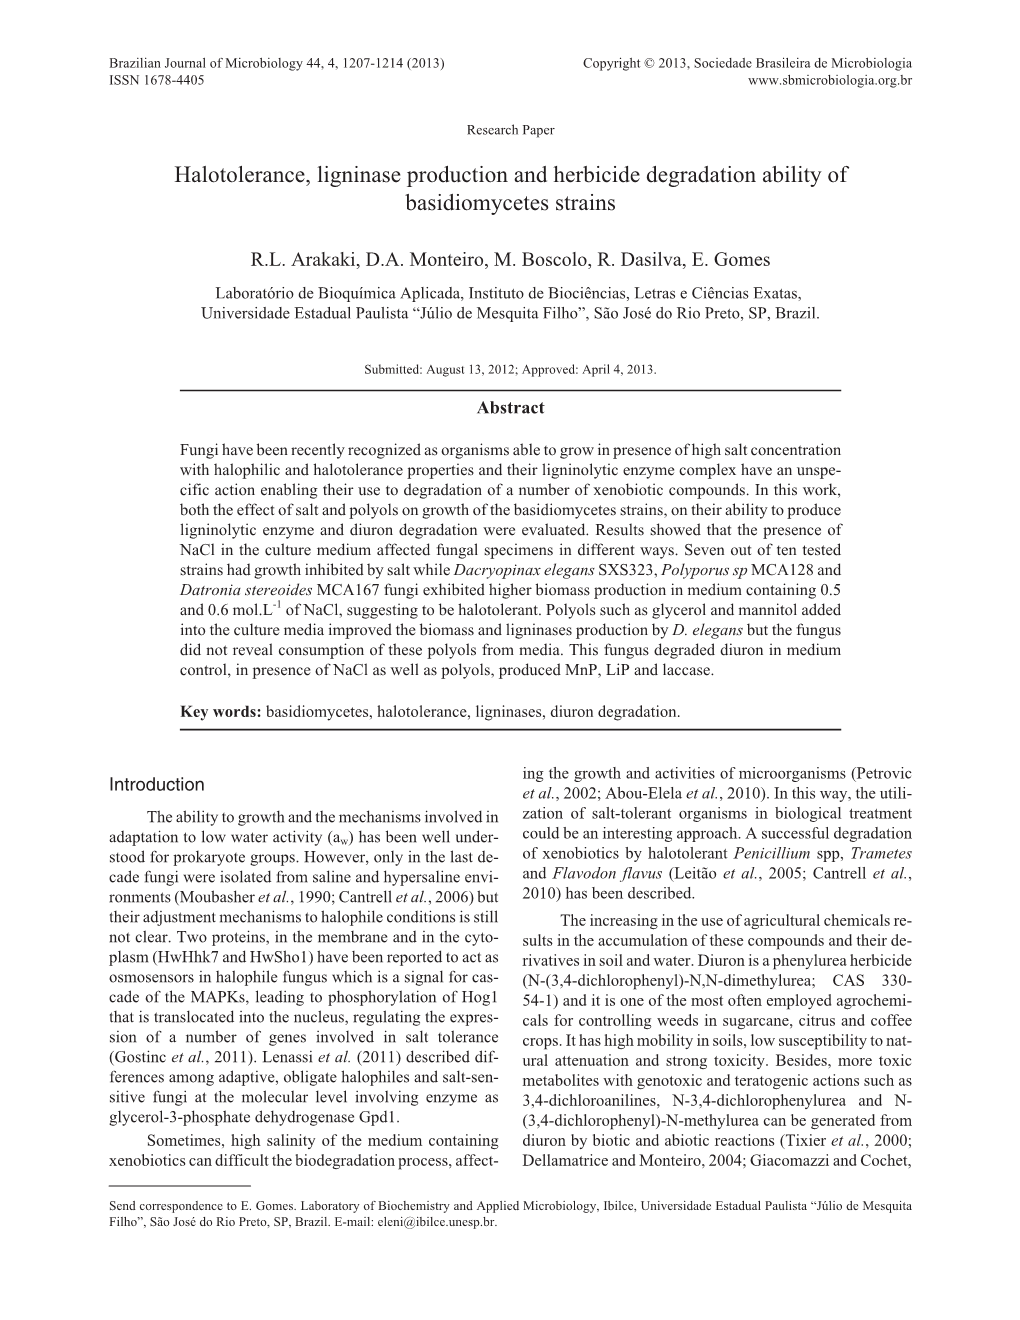 Halotolerance, Ligninase Production and Herbicide Degradation Ability of Basidiomycetes Strains